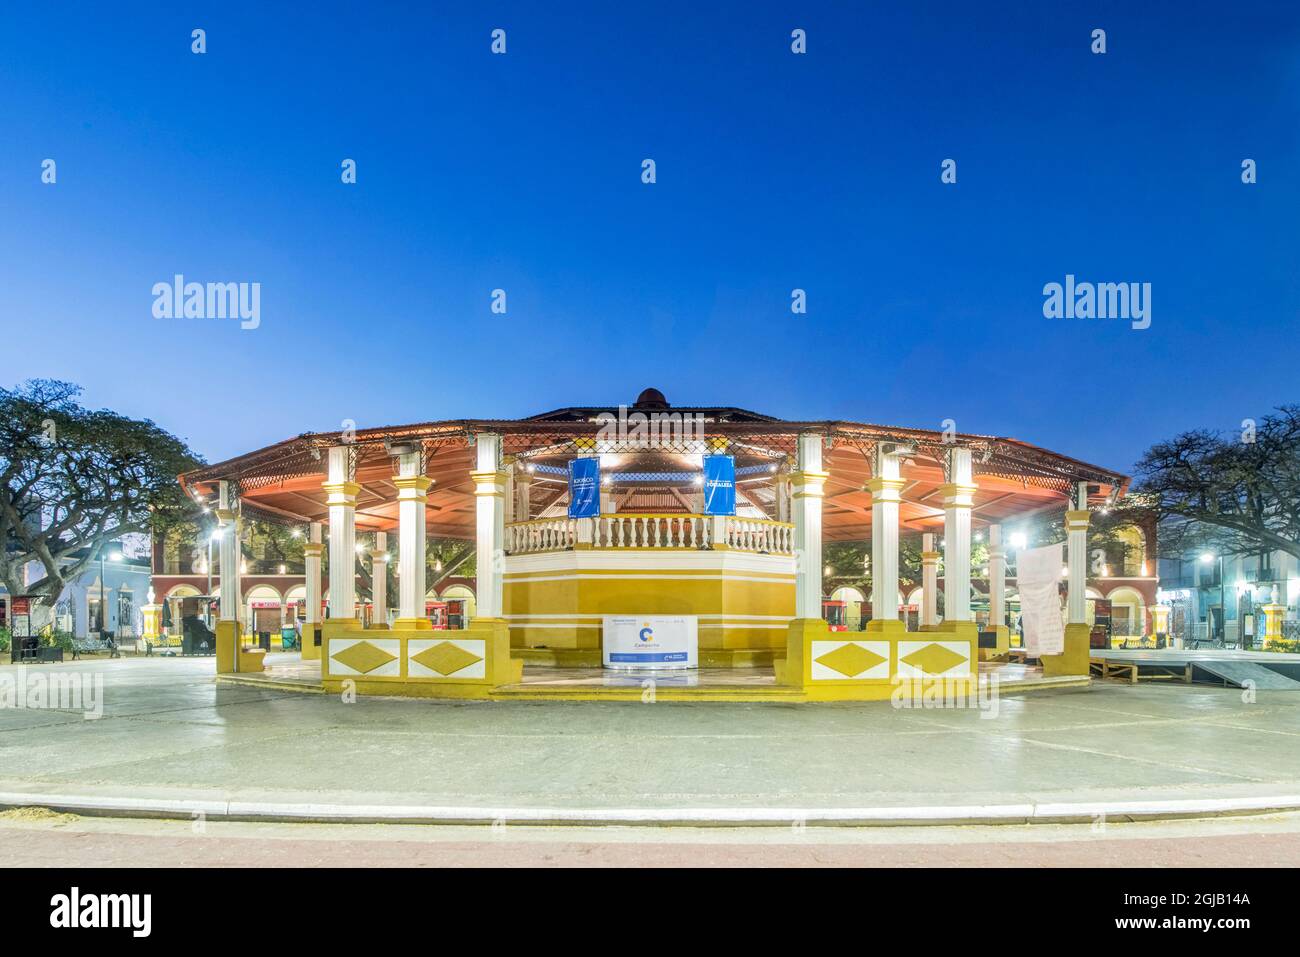 Mexico, Campeche. Plaza de la Independencia, central square of Campeche city Stock Photo